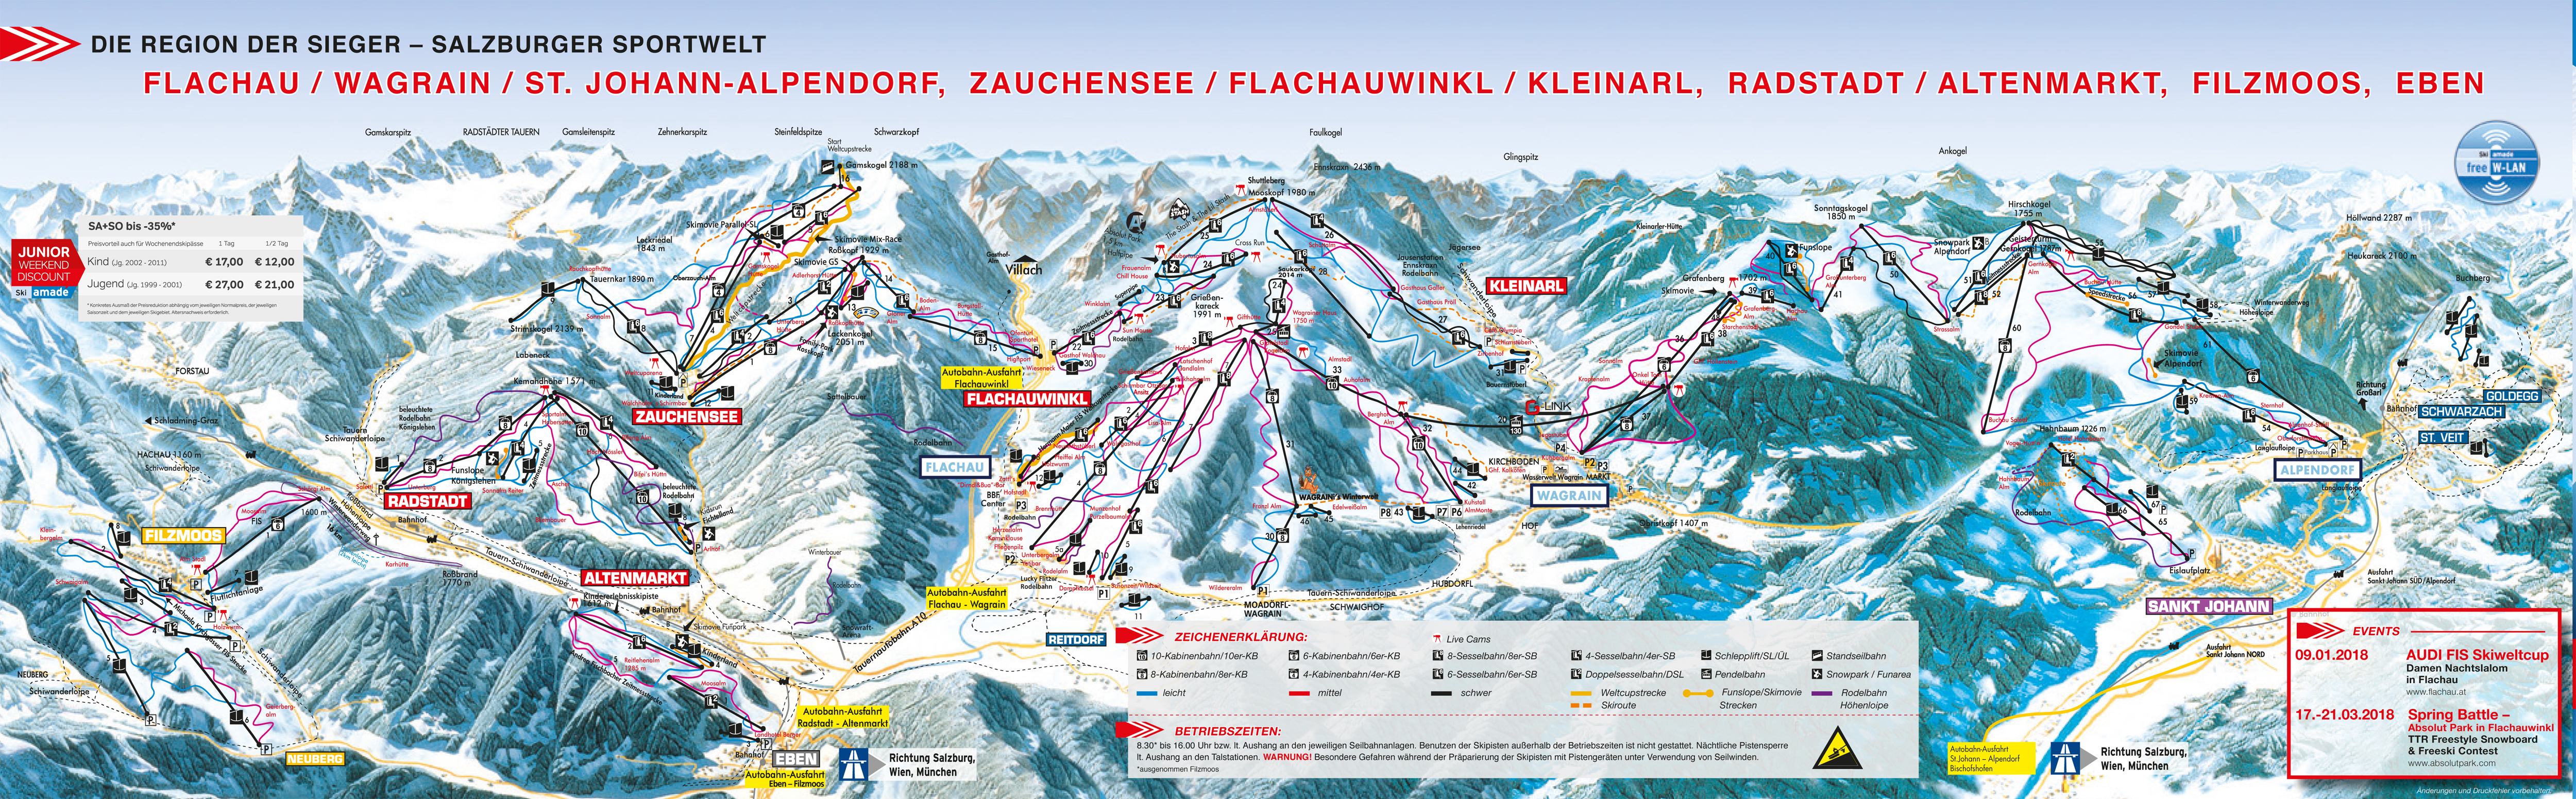 Flachau ski map